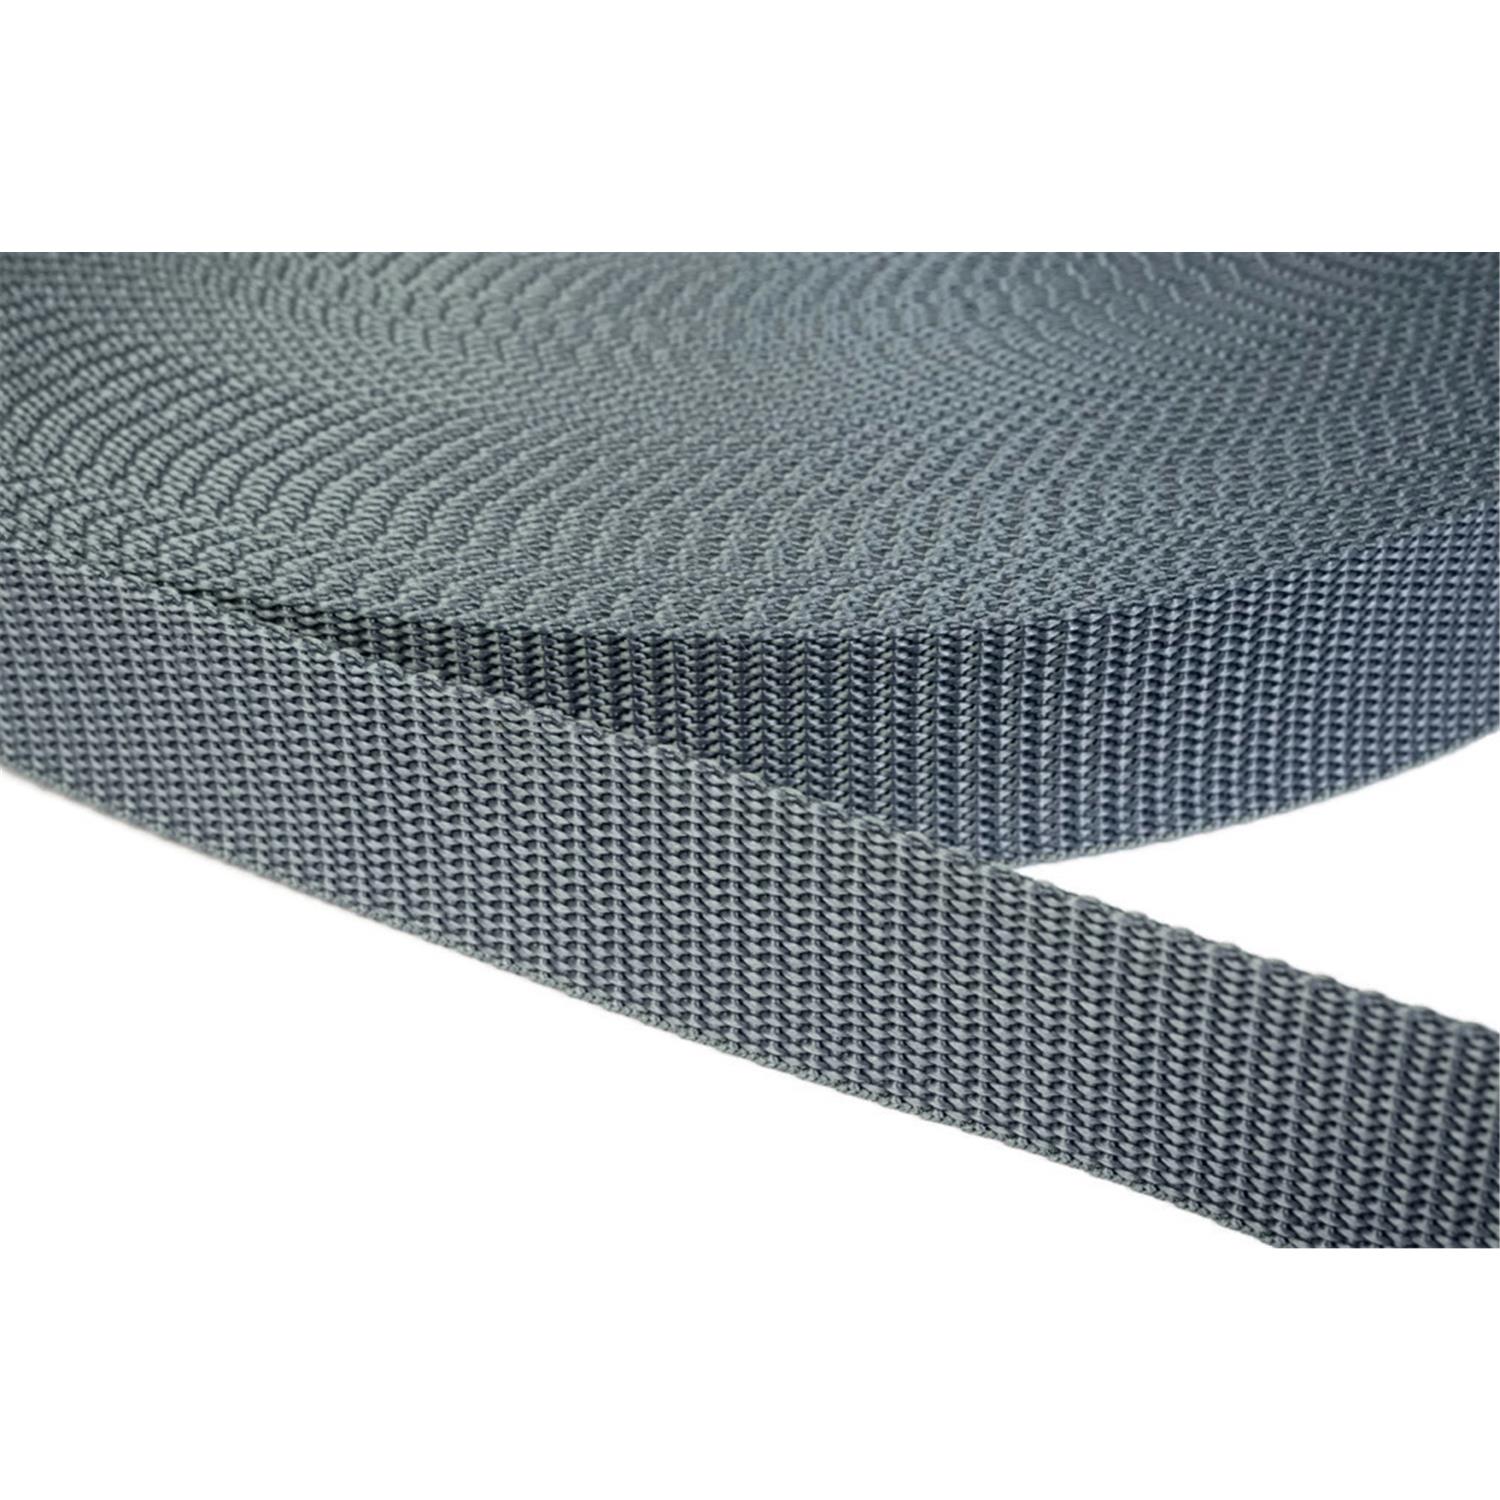 Gurtband 15mm breit aus Polypropylen in 41 Farben 38 - mittelgrau 12 Meter